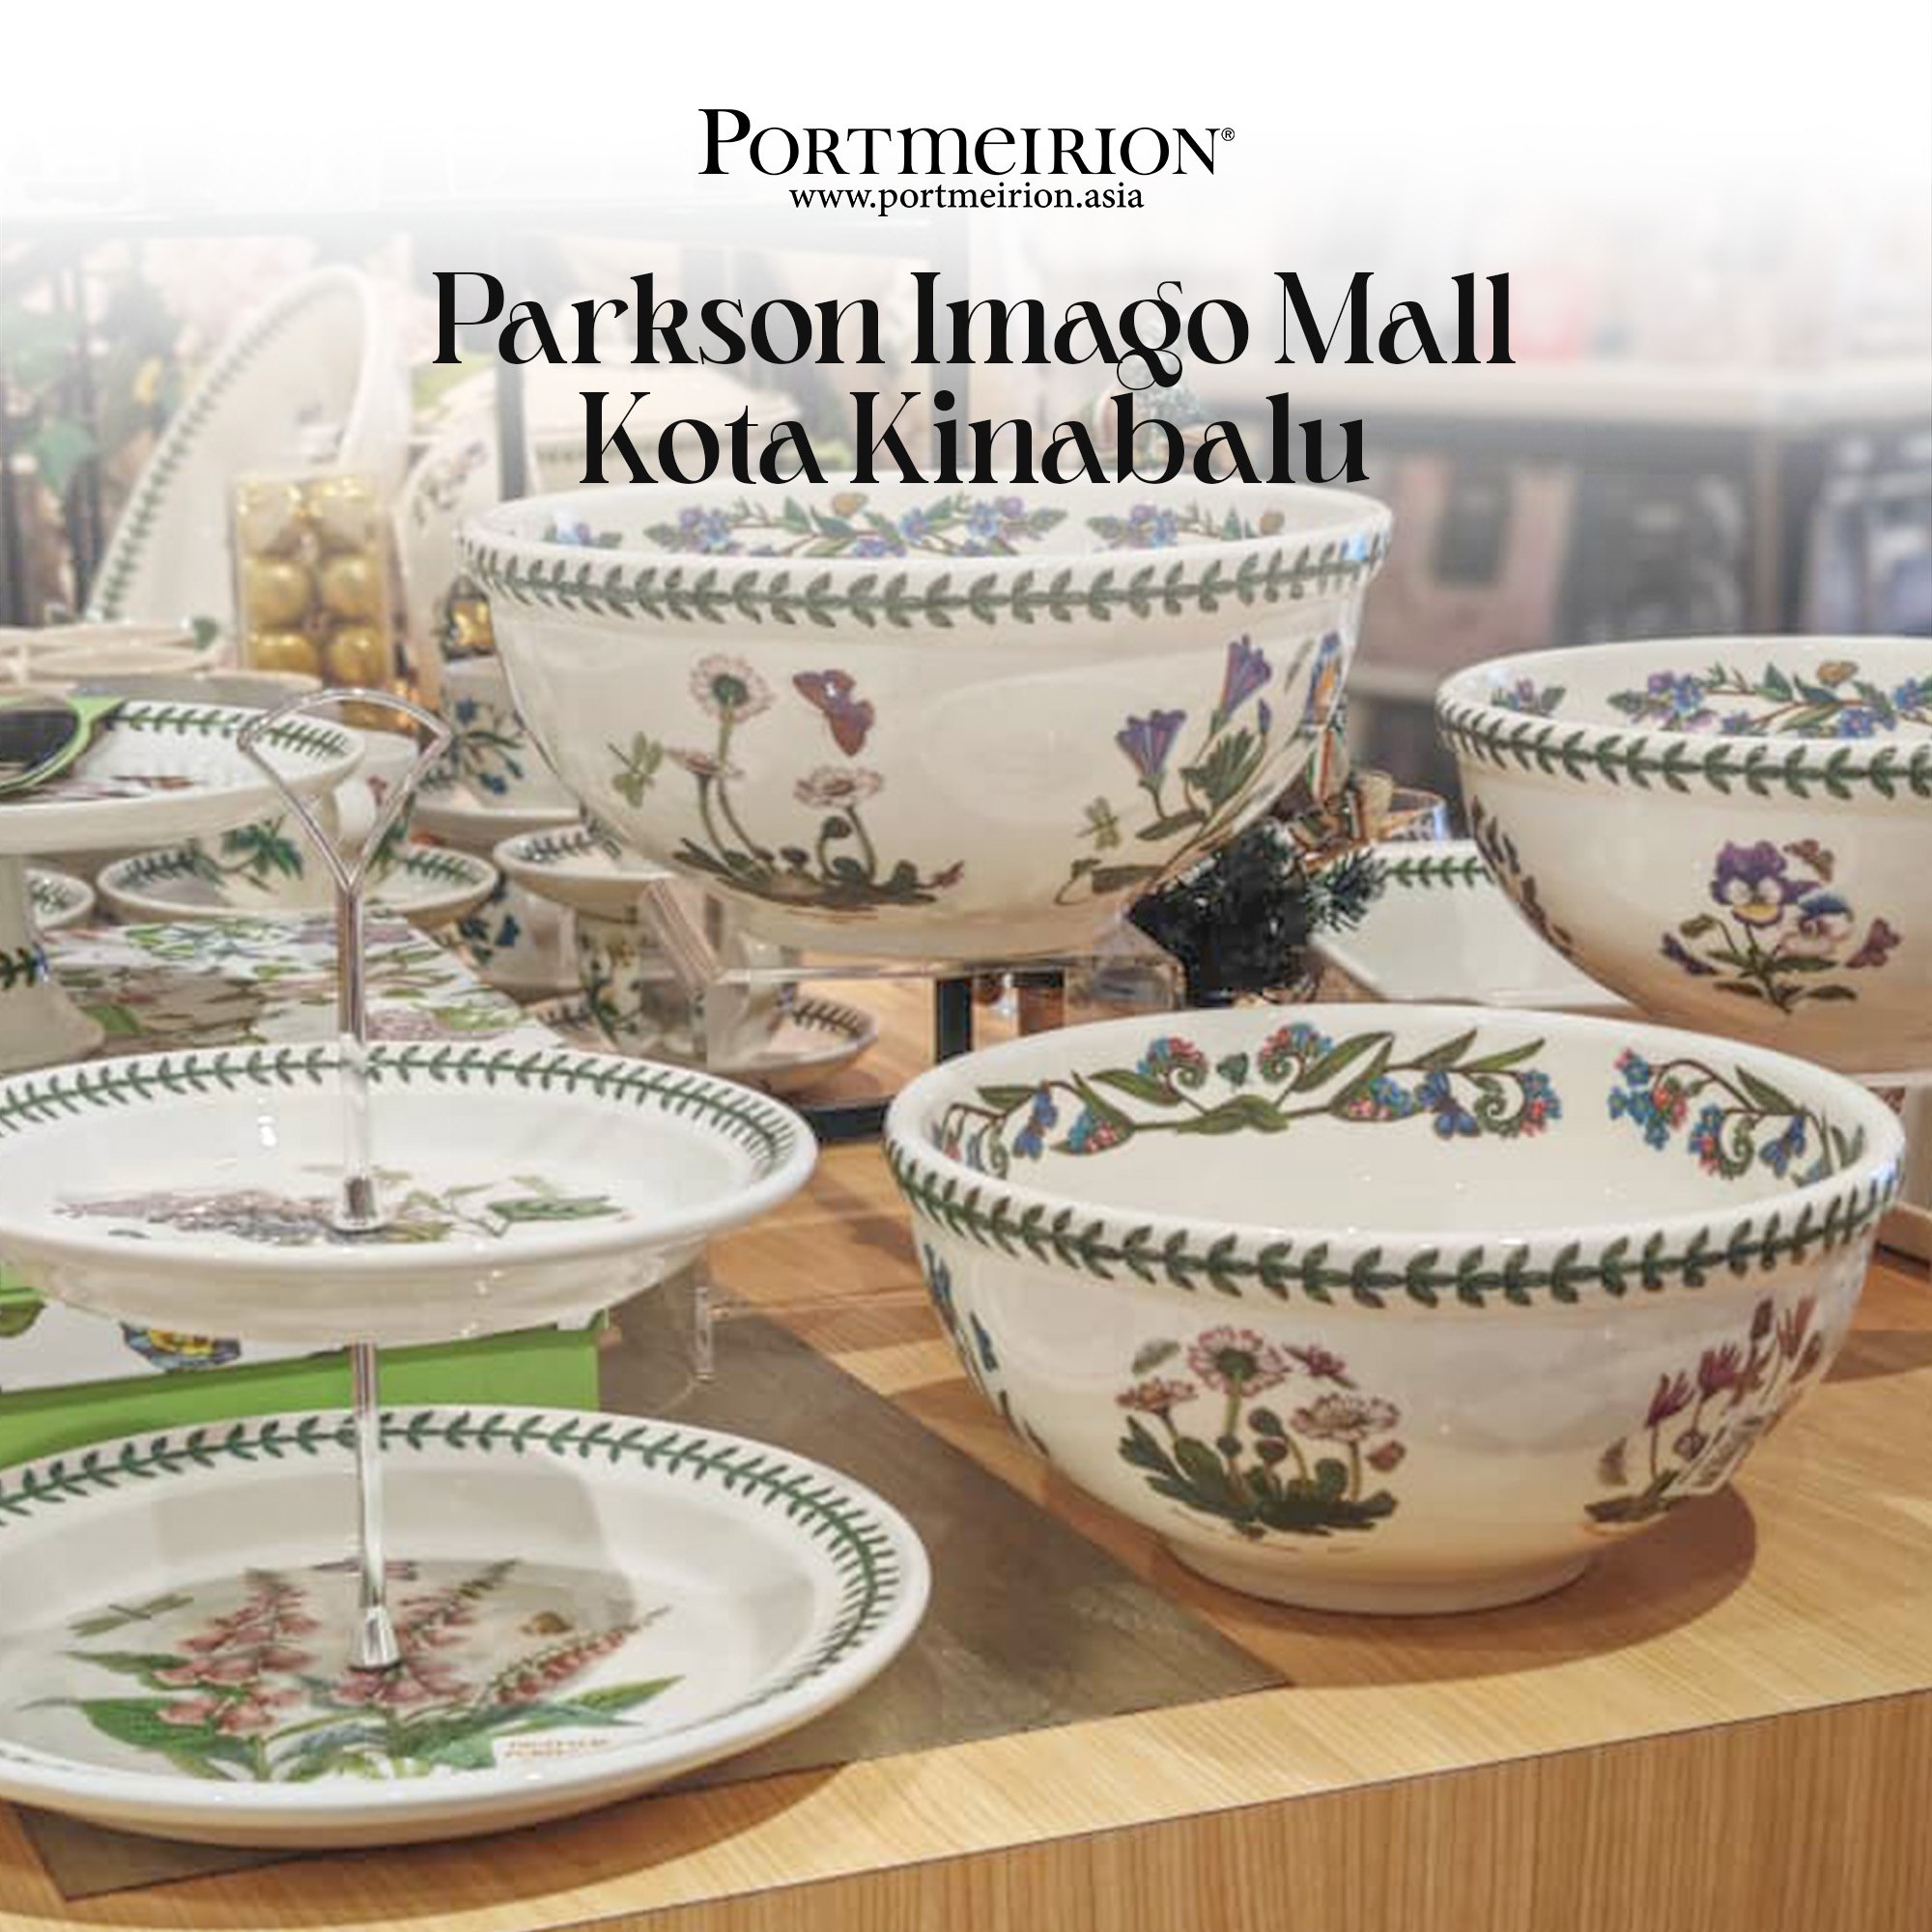 Parkson Imago Mall Kota Kinabalu